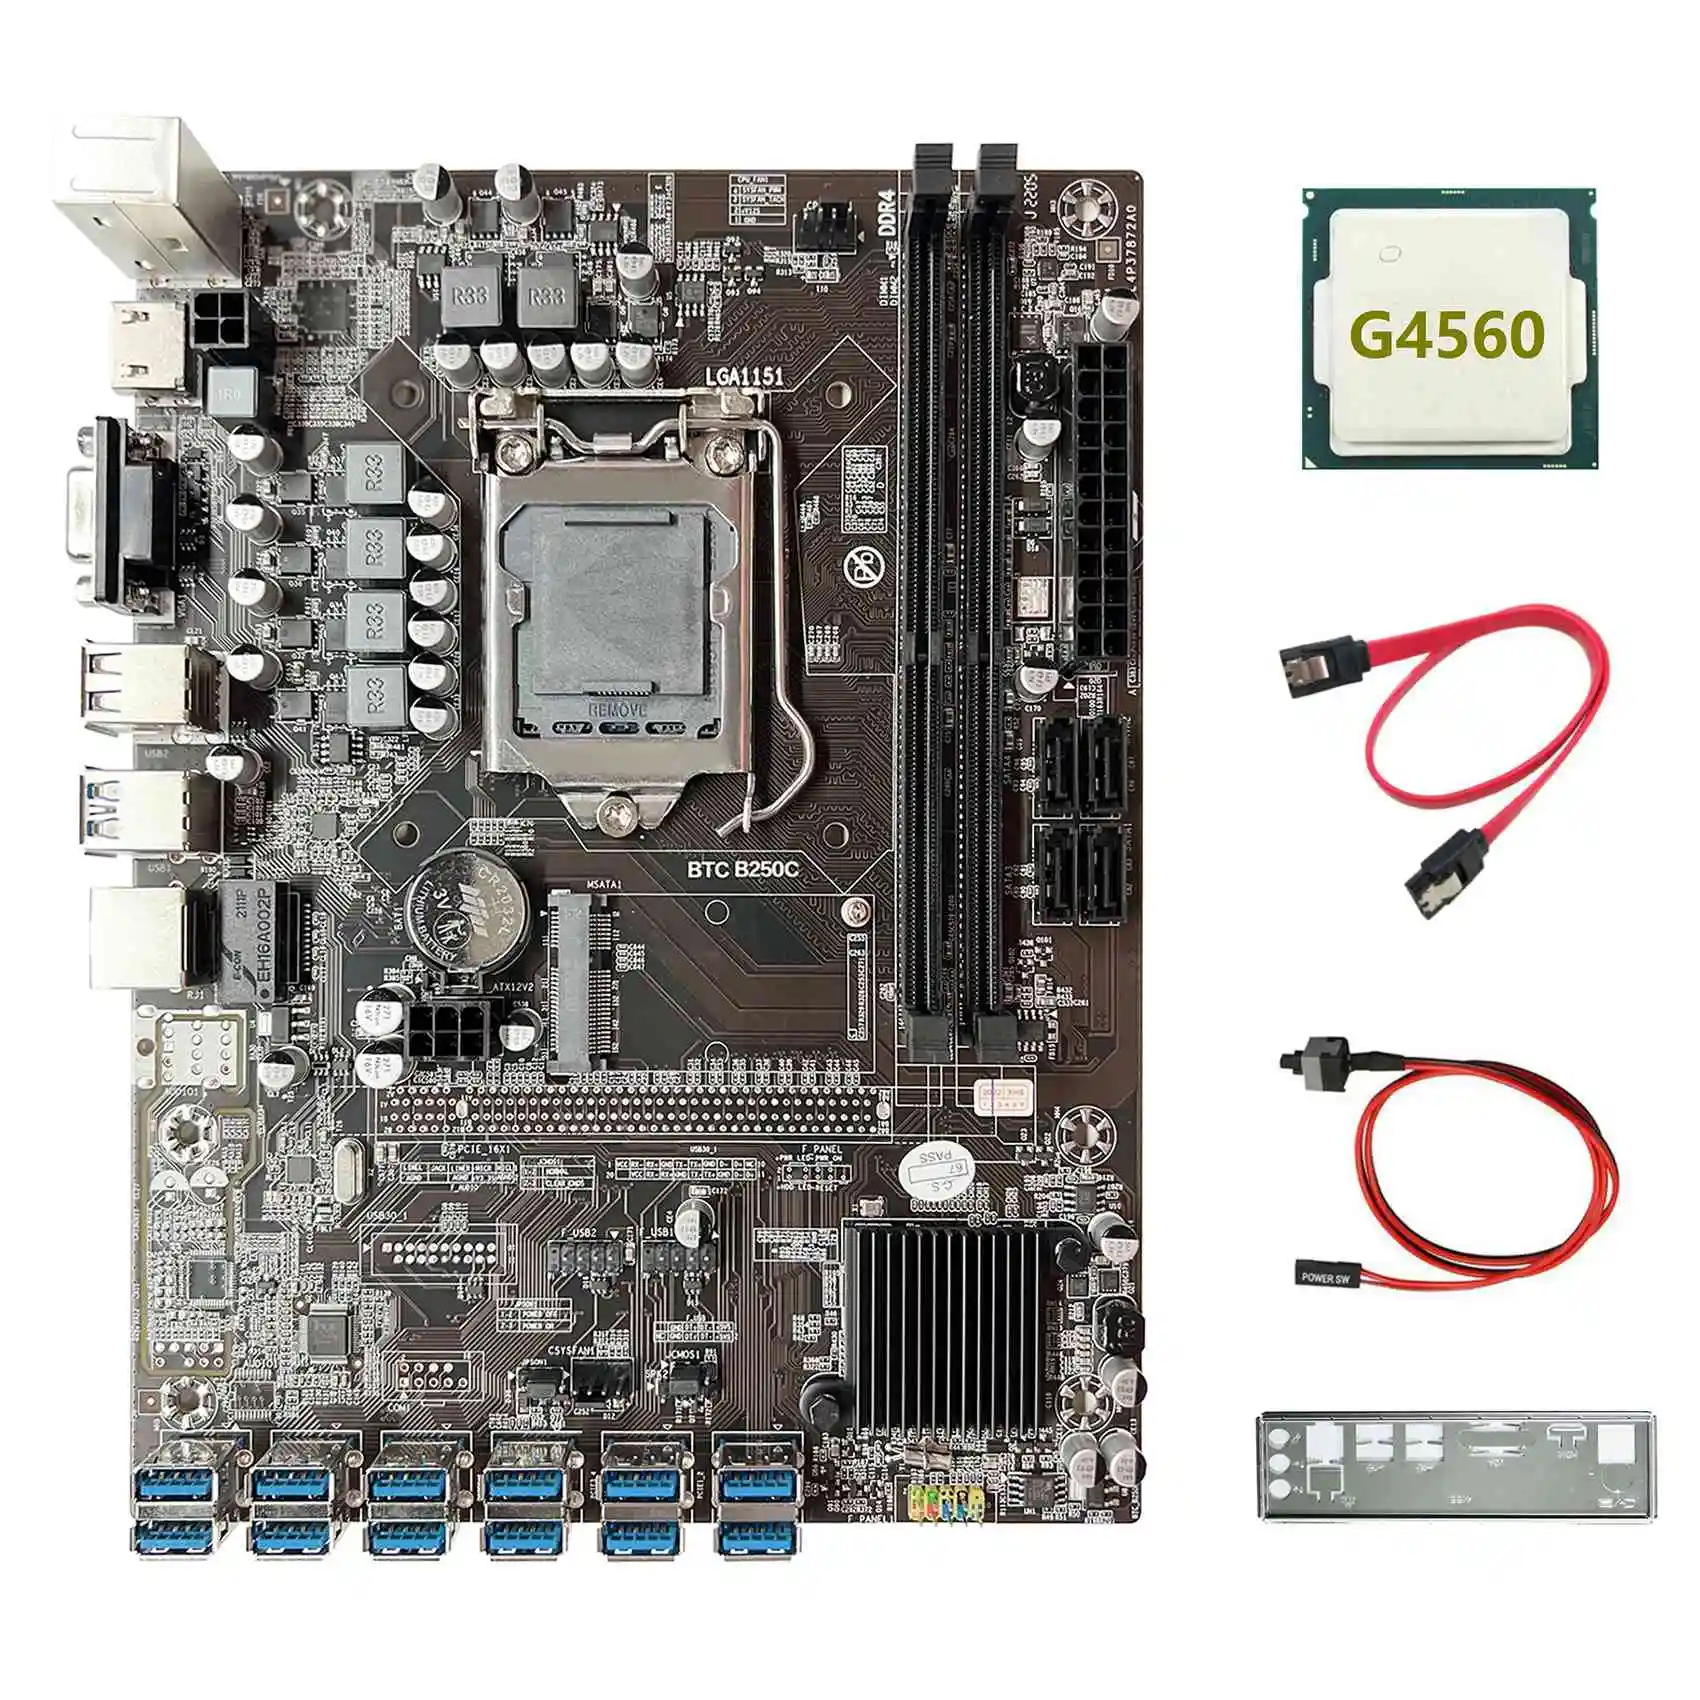 

Материнская плата B250C ETH Miner + процессор G4560 + перегородка + кабель SATA + коммутационный кабель 12USB3.0, слот для графической карты LGA1151 для BTC